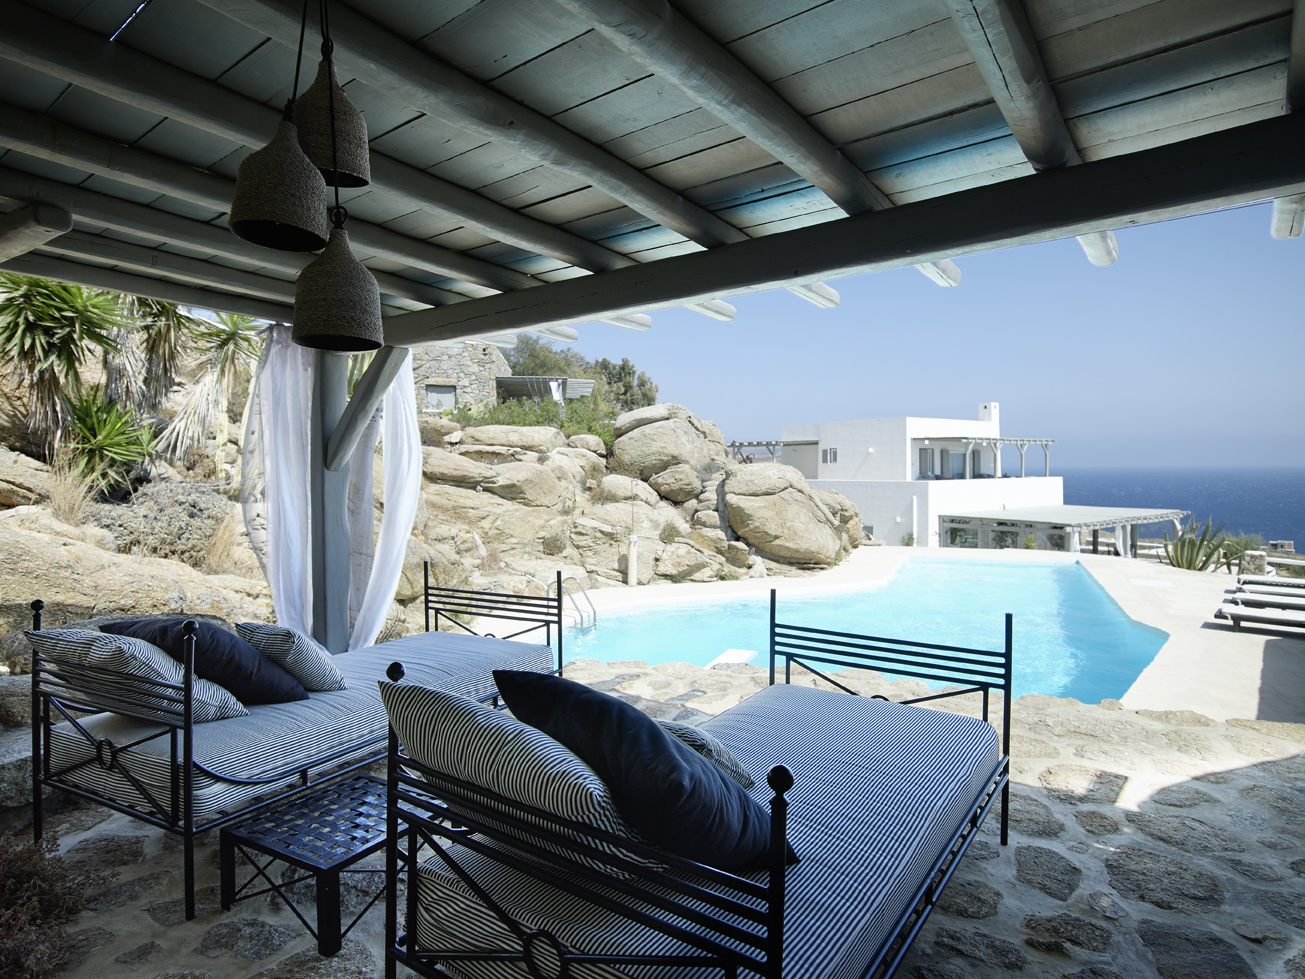 World class luxury villas in the Greek island of Mykonos